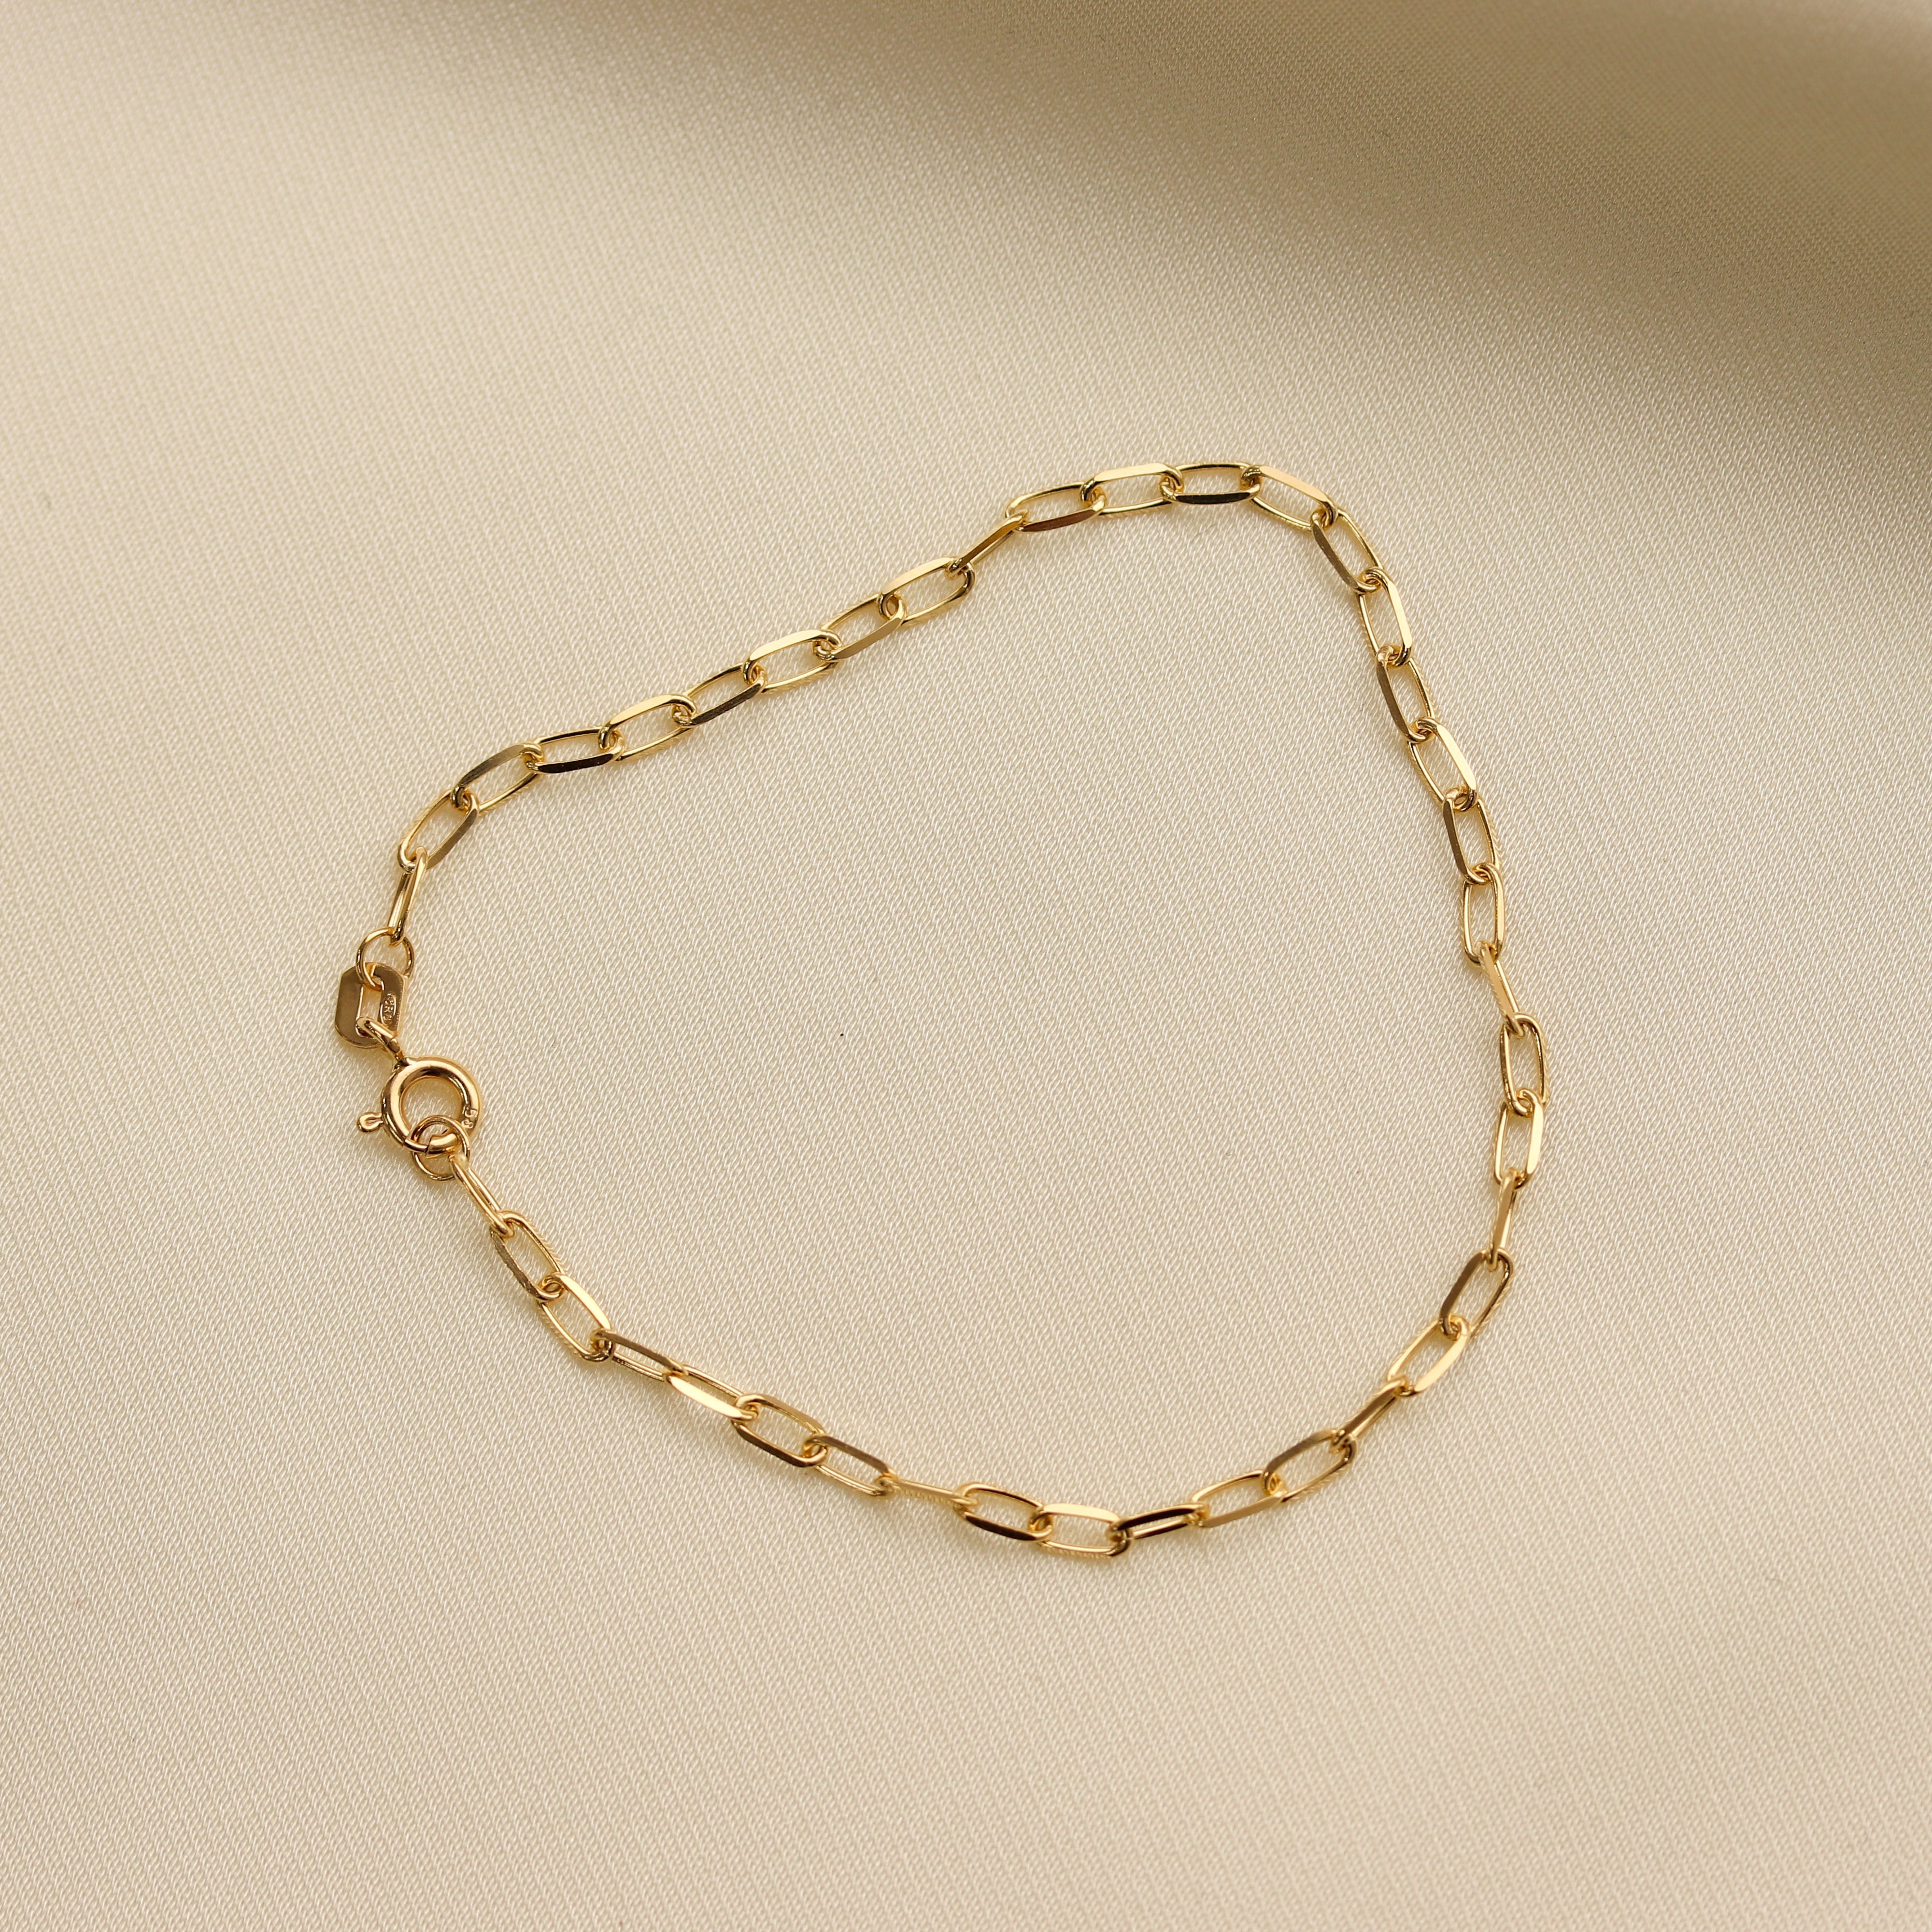 latest gold bracelet designs for women - 100+ new designs - YouTube